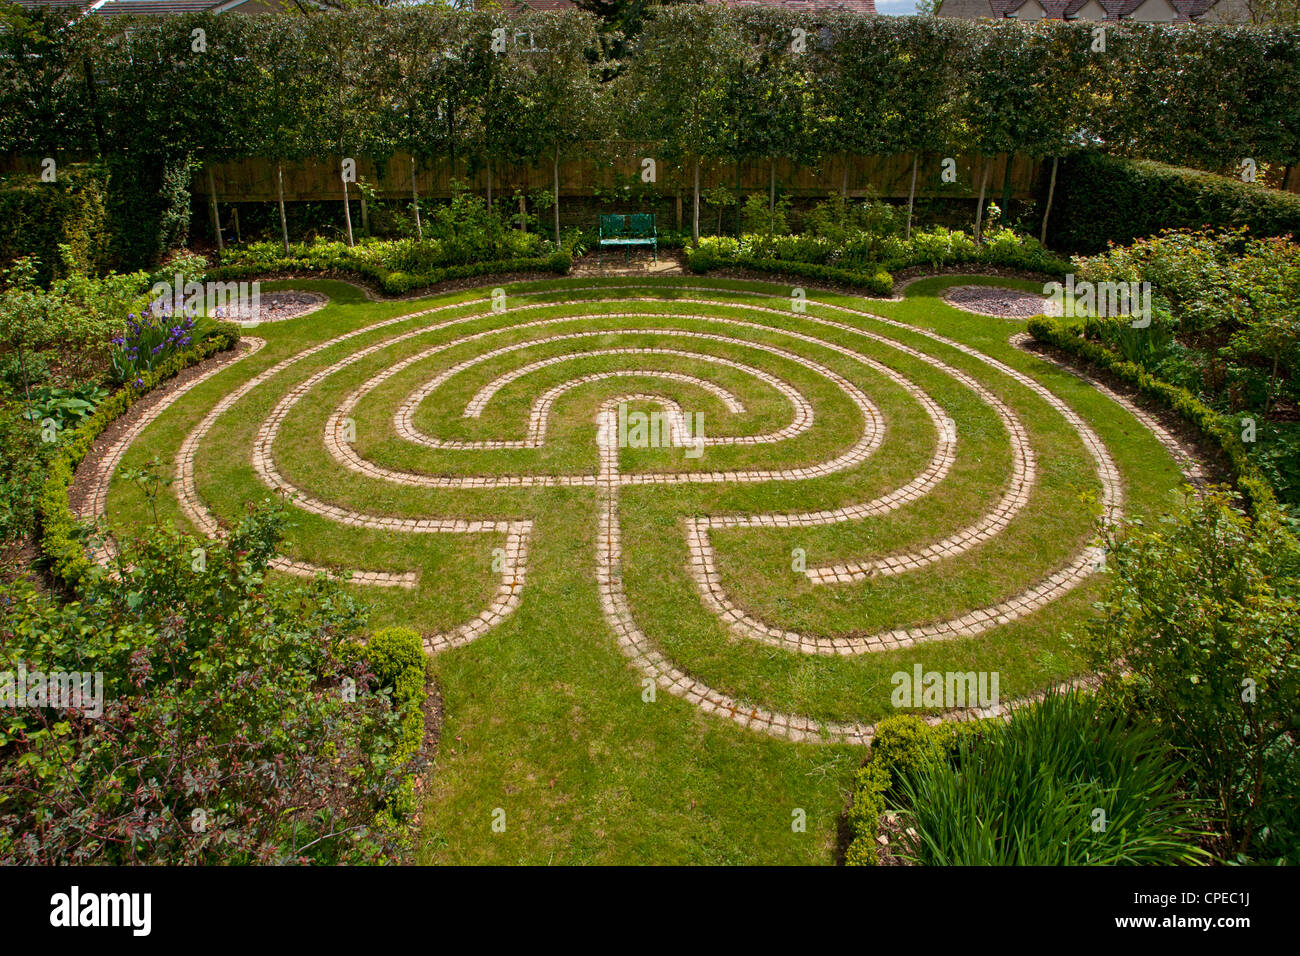 Chemin de pierre maze dans la pelouse pelouse de jardin privé, en Angleterre Banque D'Images